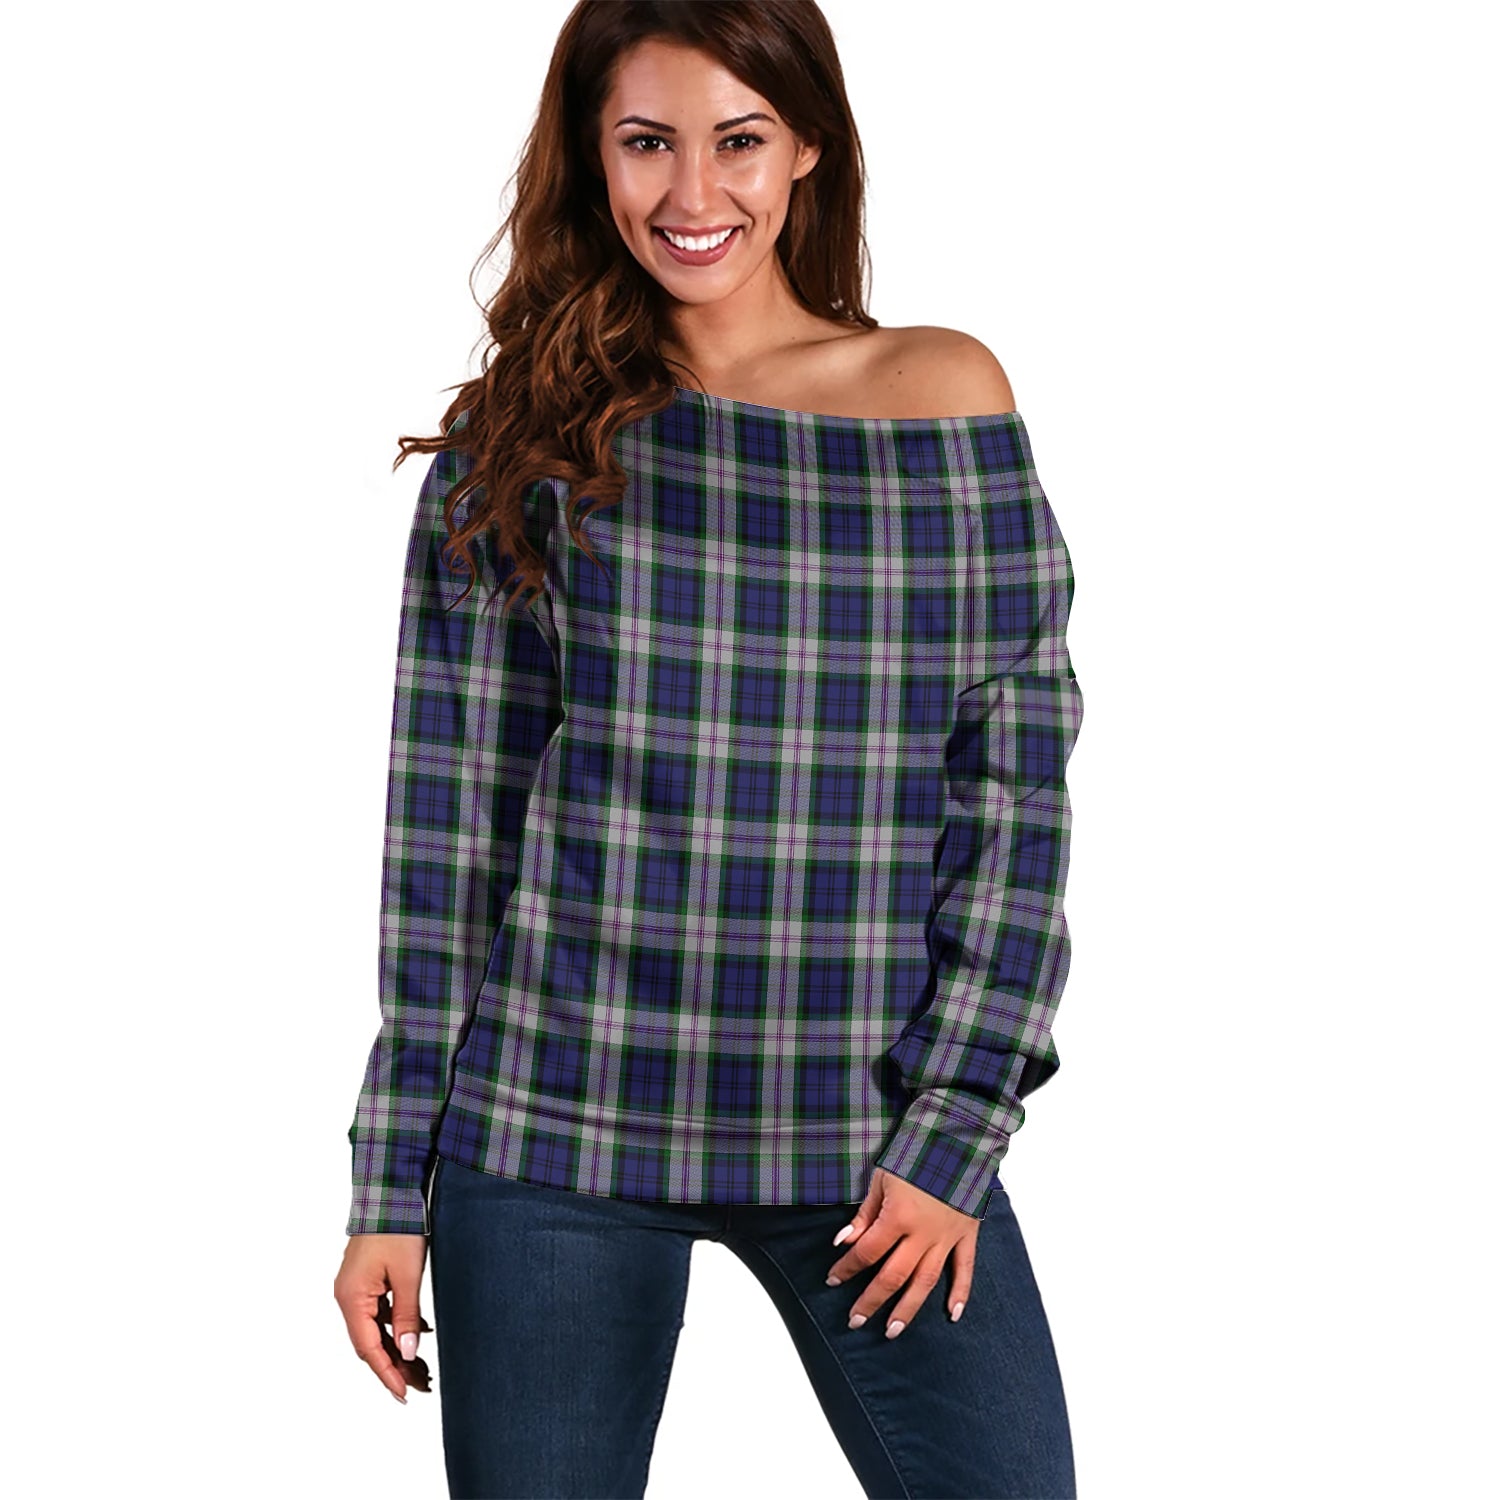 Baird Dress Tartan Off Shoulder Women Sweater Women - Tartanvibesclothing